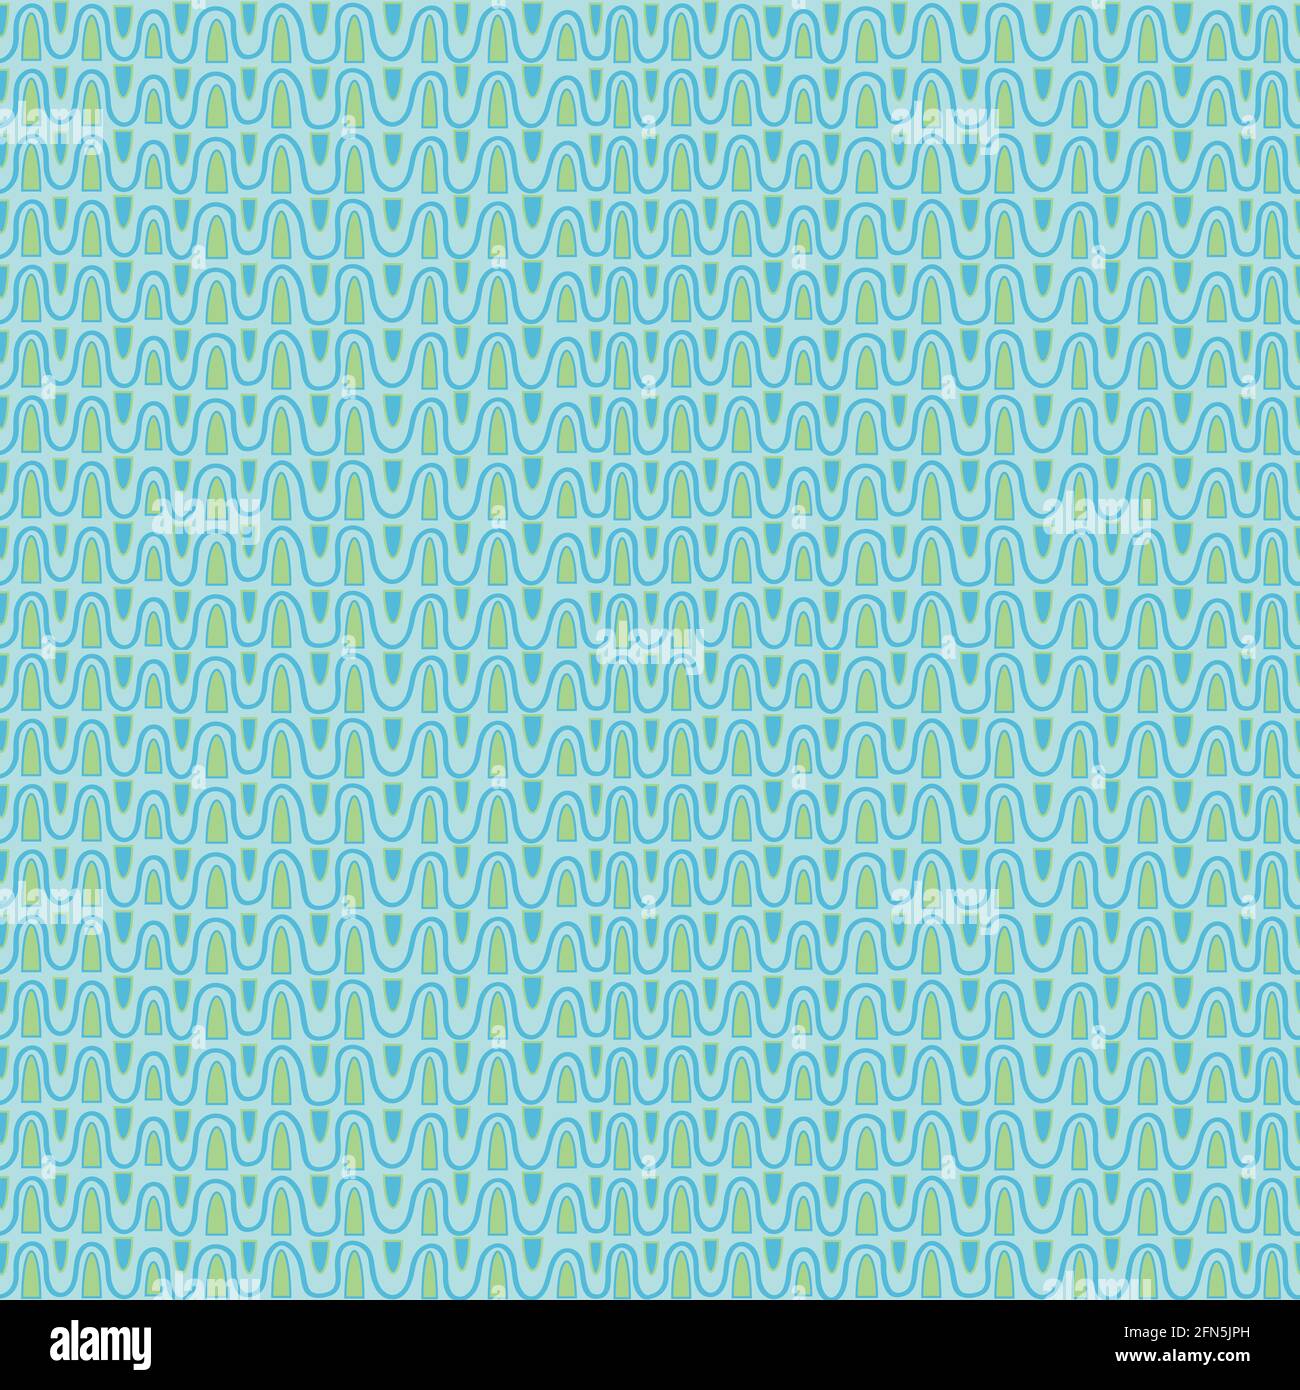 Nahtlos wiederholtes Muster. Naive, handgezeichnete Umrandungen in hellblau und grün. Grenzen von unebenen Wellen. Stock Vektor